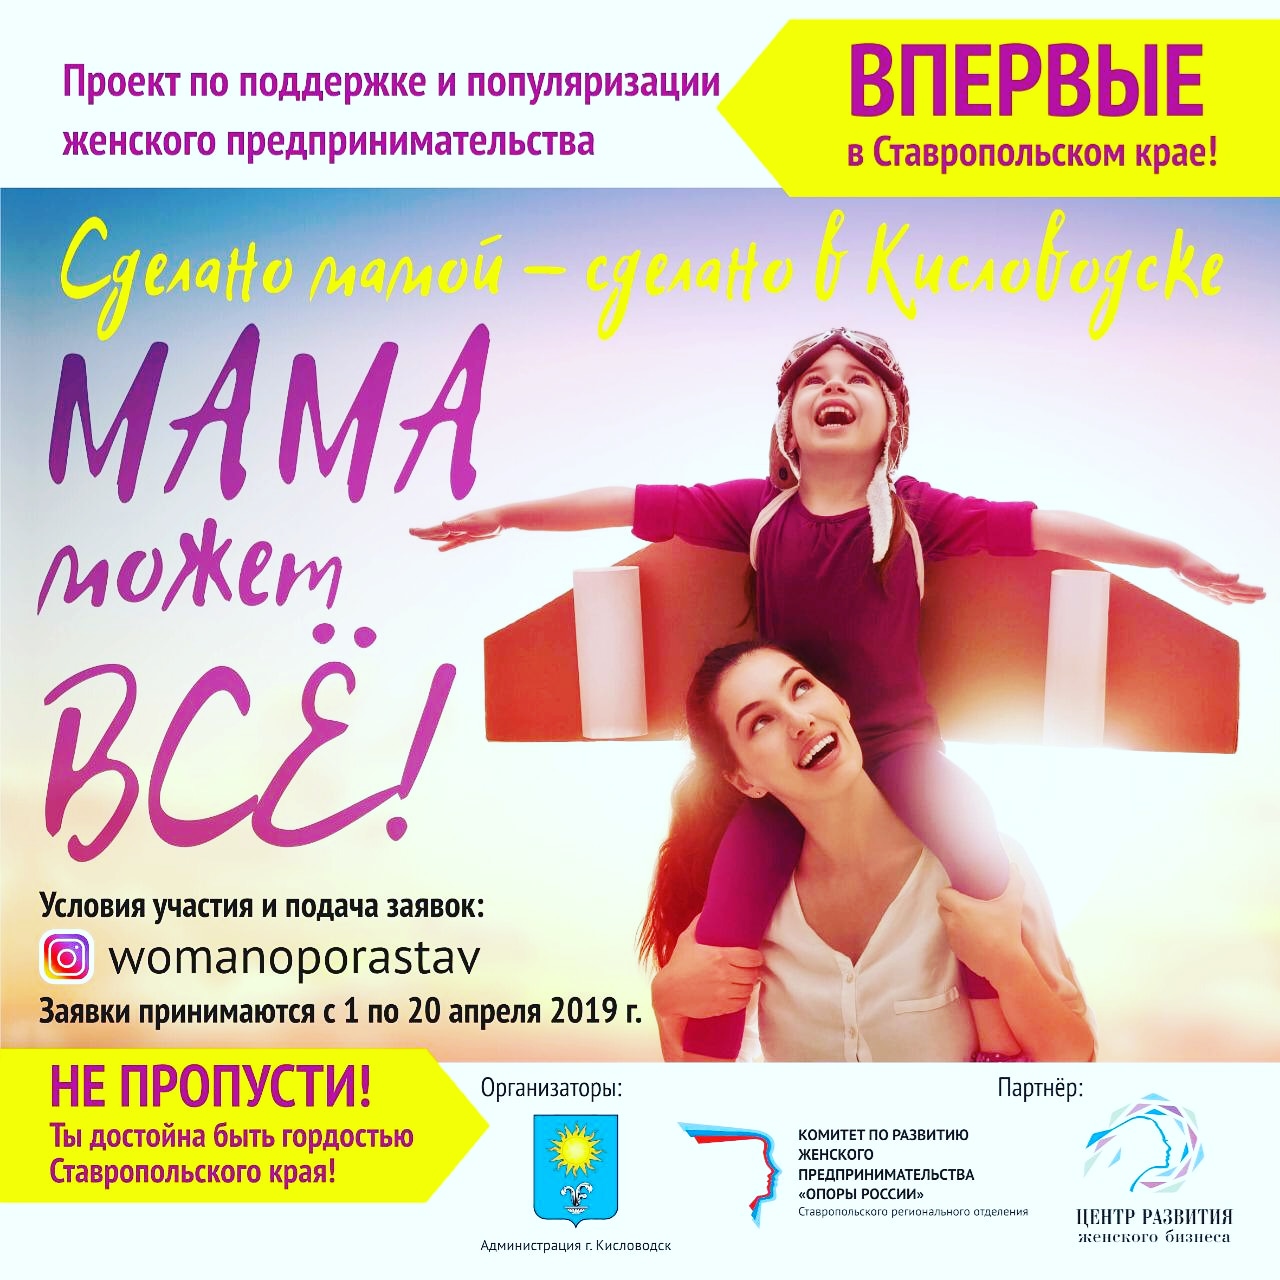 На Ставрополье стартует масштабный фотопроект в поддержку женского предпринимательства